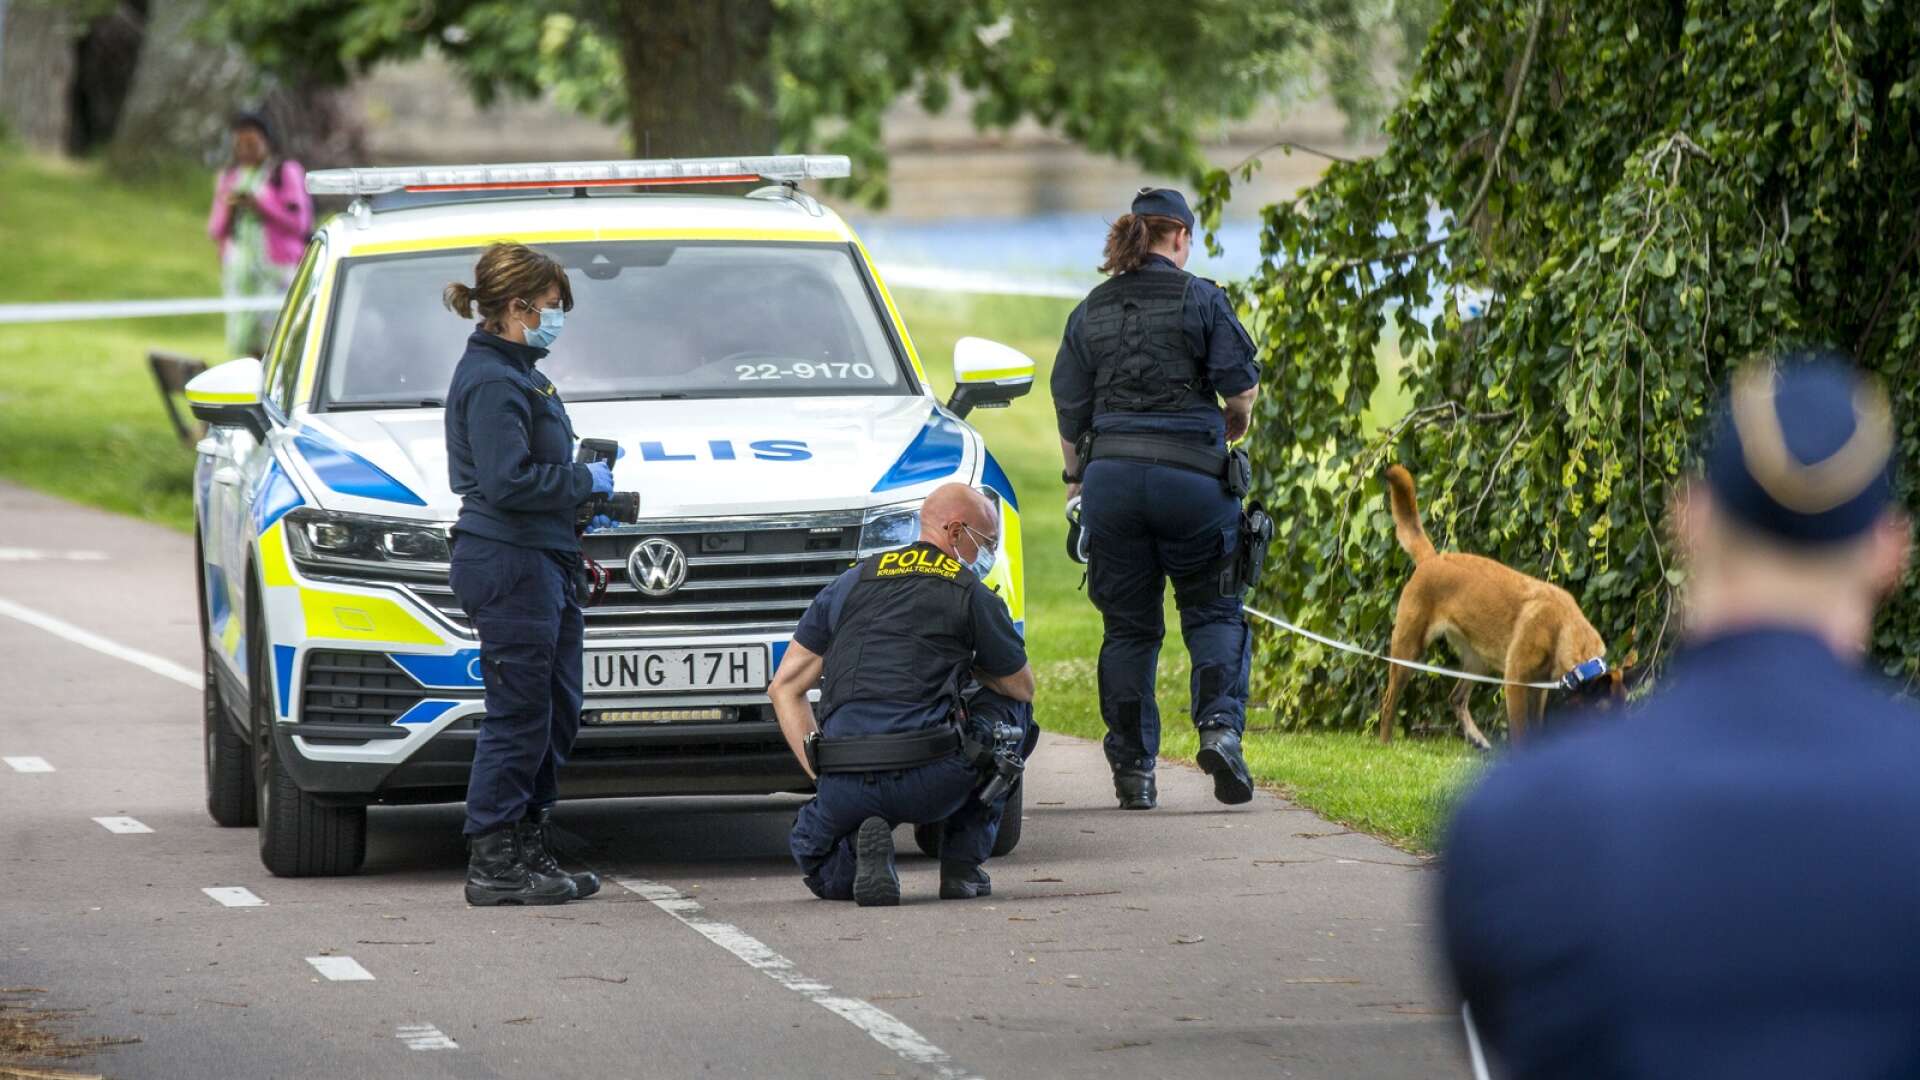 Med tanke på de allvarliga våldsbrott vi sett i Karlstad i sommar behöver vi modiga politiker som är i framkant och vill hitta nya lösningar för att få bukt med kriminaliteten, skriver Robin Lennartsson och Anders Birkefjärd.